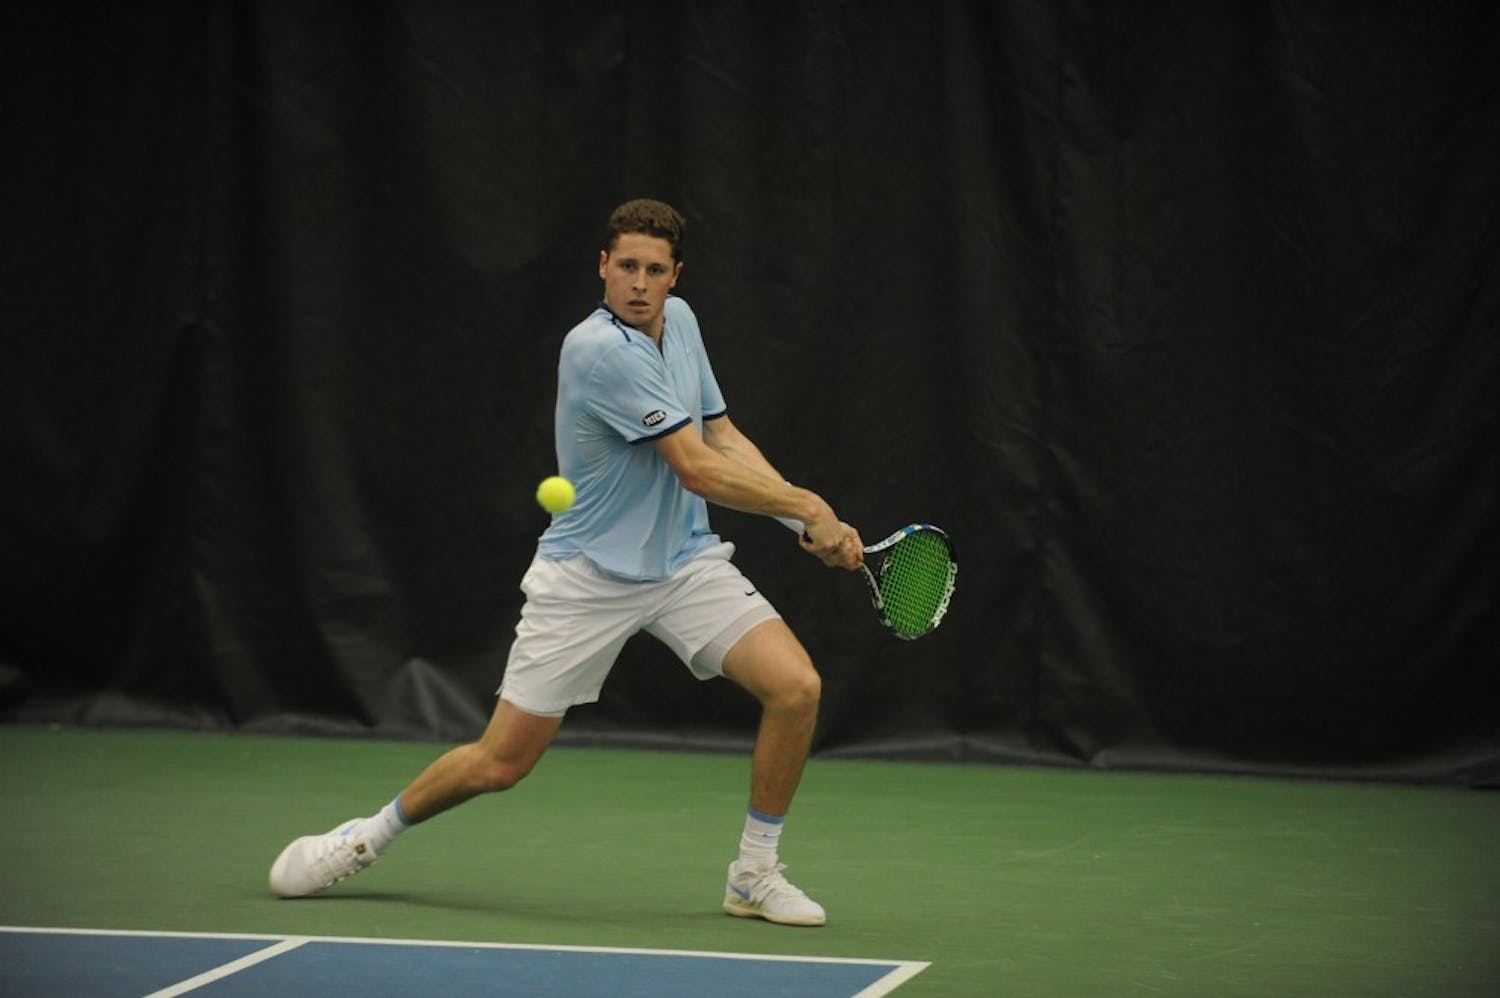 Blaine Boyden tennis